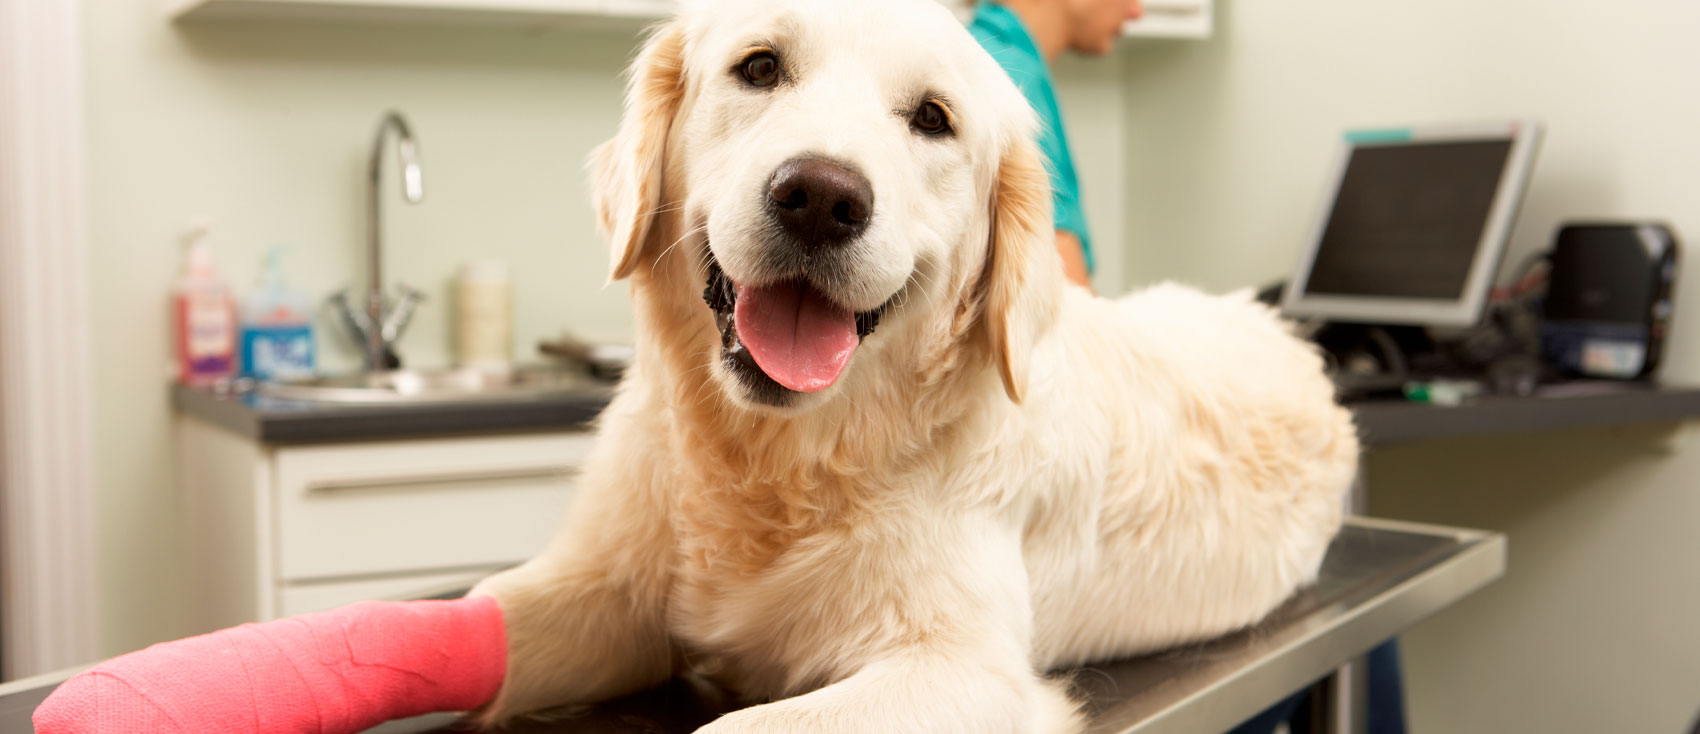 Magnetoterapia veterinaria: terapia innovadora para el bienestar animal